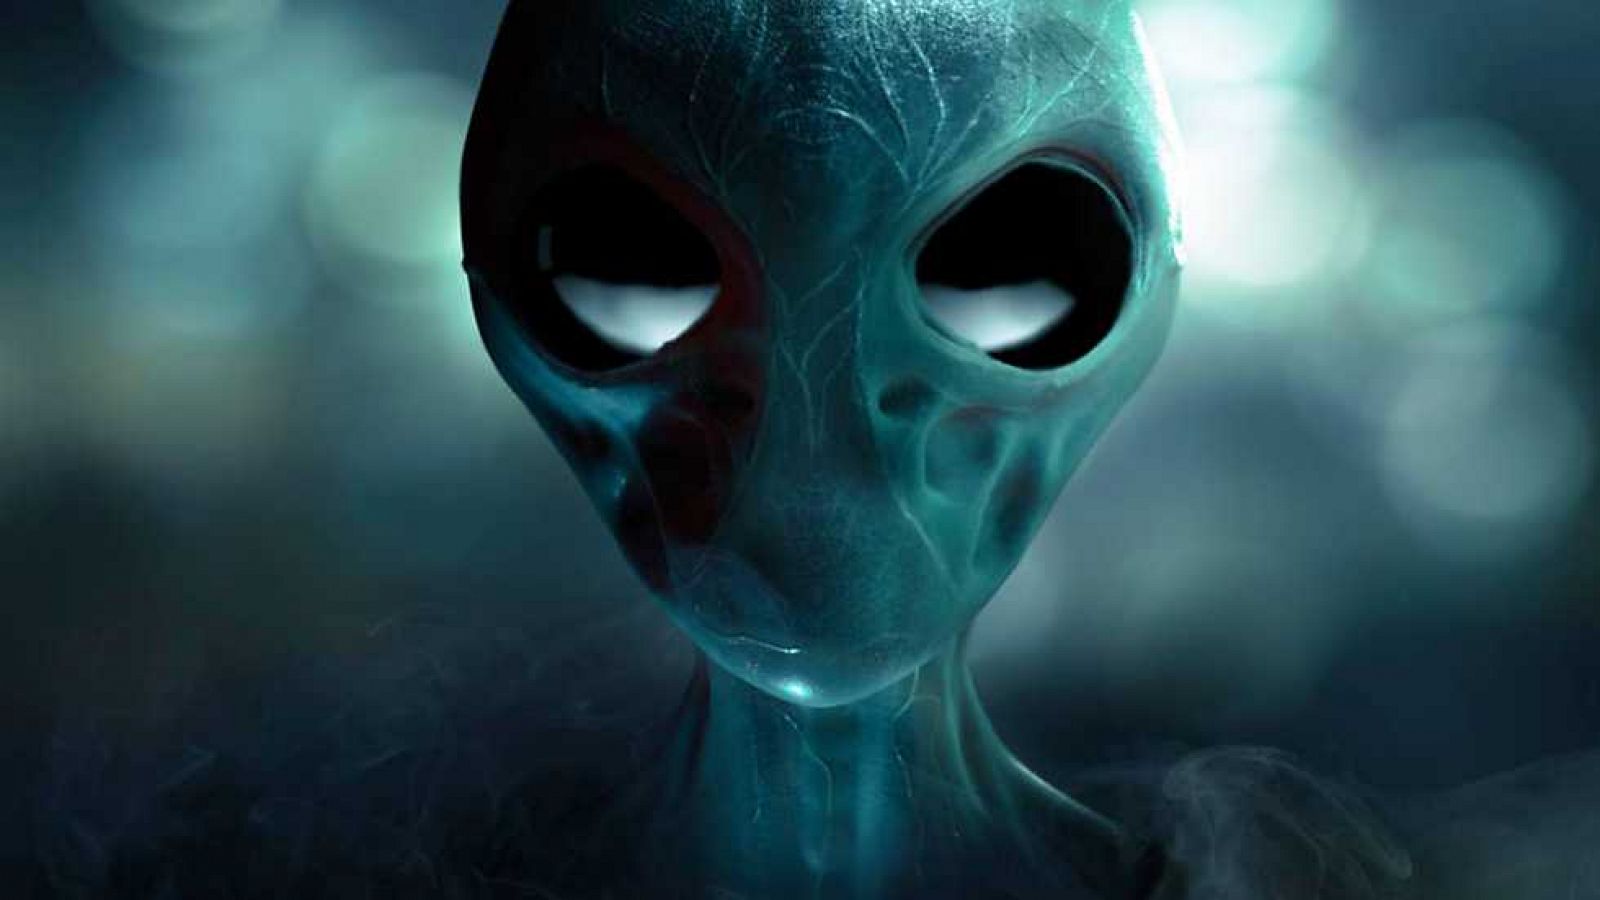 Docufilia - Invasión alienígena: ¿estamos preparados?